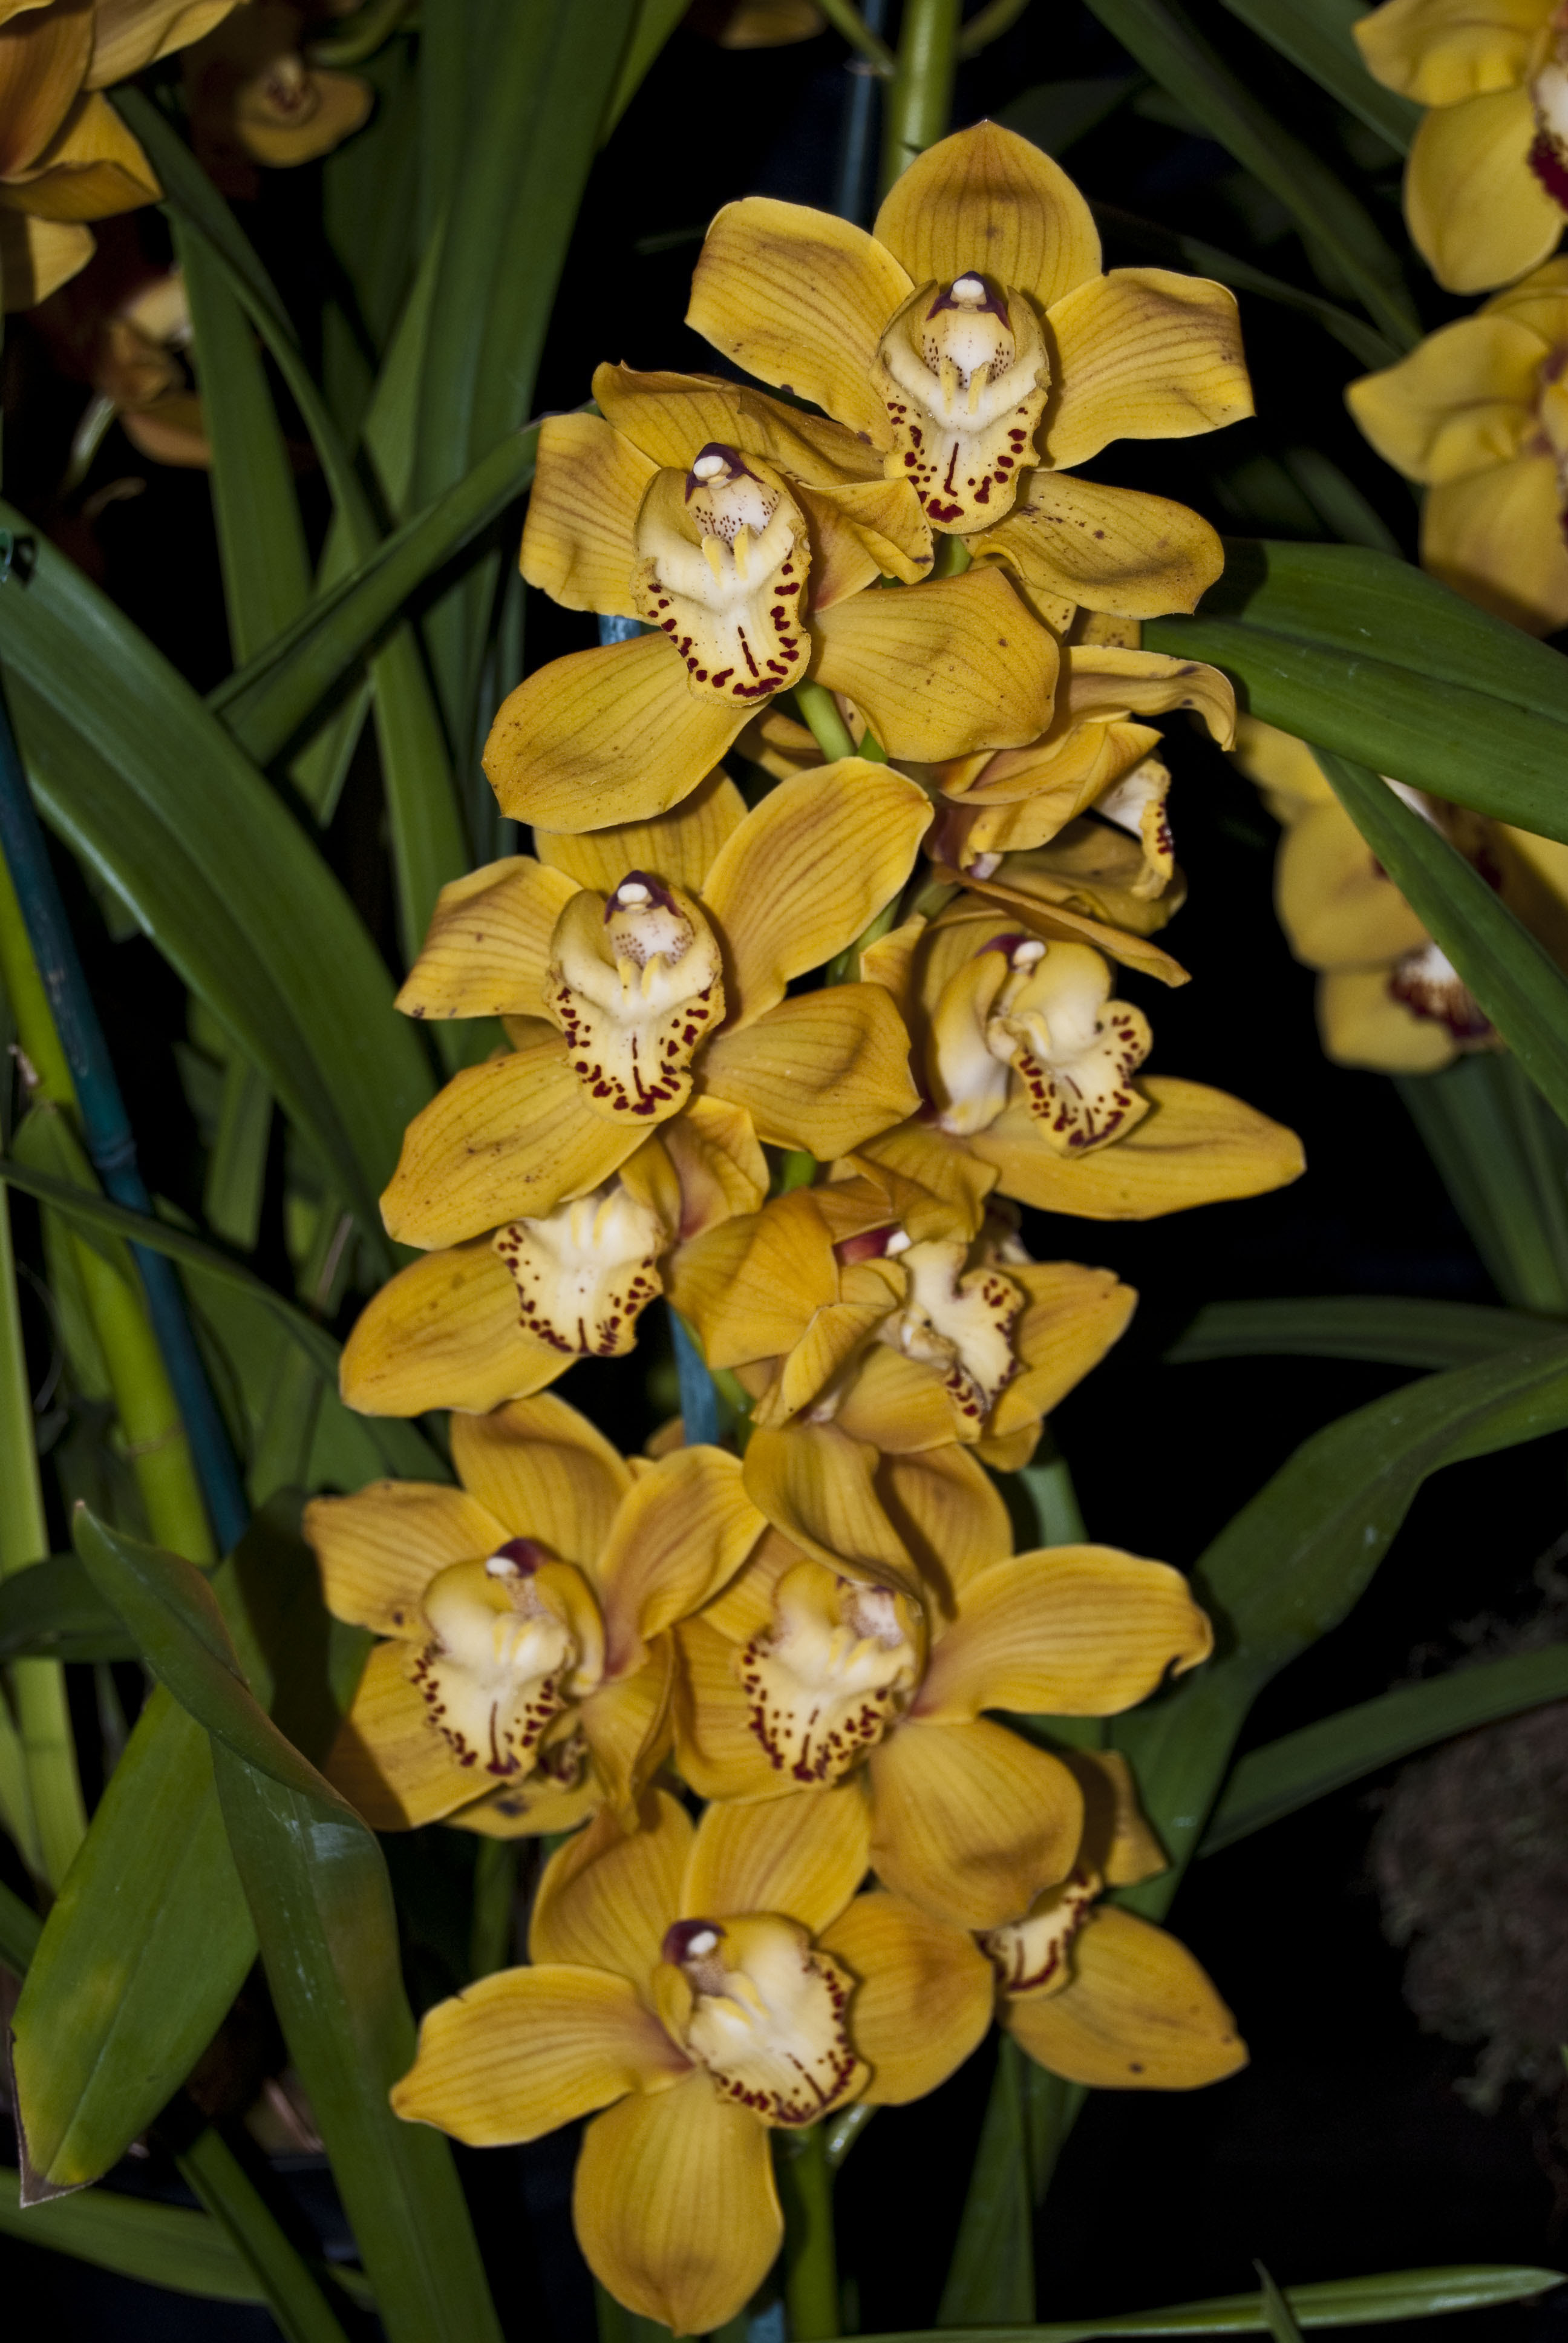 Hoa Phong Lan Vi T Vietnam Orchids Cymbidium